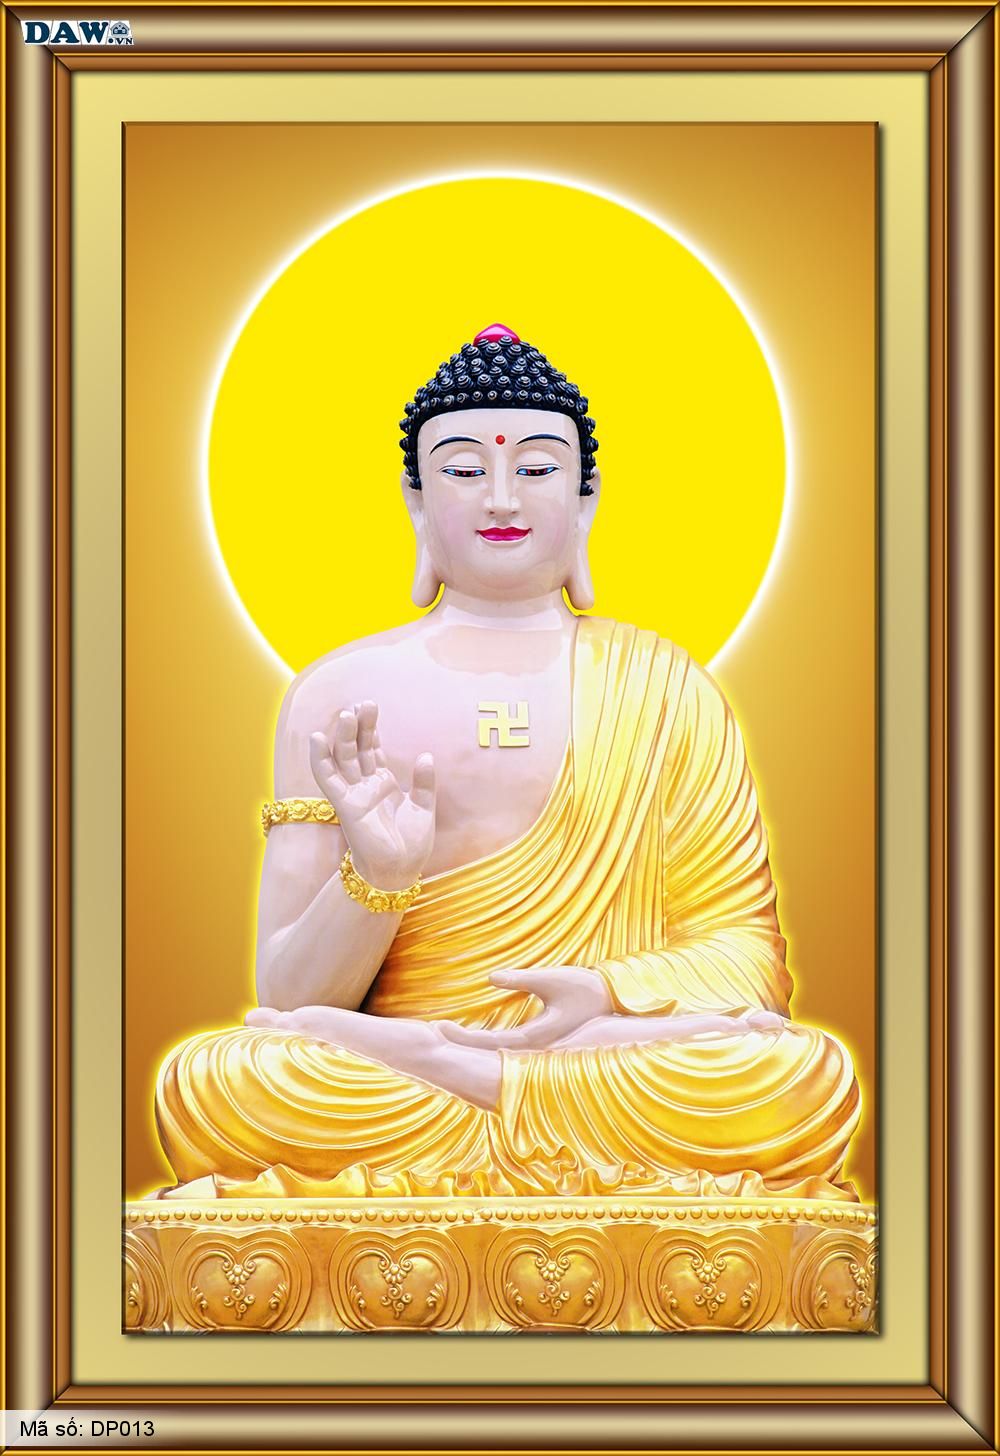 Tranh dán tường Phật 3D: Tranh dán tường Phật 3D mang đến cho bạn những trải nghiệm tuyệt vời về tâm linh và thẩm mỹ, tạo bầu không khí tĩnh lặng và yên bình trong căn phòng của bạn. Khám phá các tranh dán tường Phật 3D độc đáo và tận hưởng sự tuyệt vời của chúng.